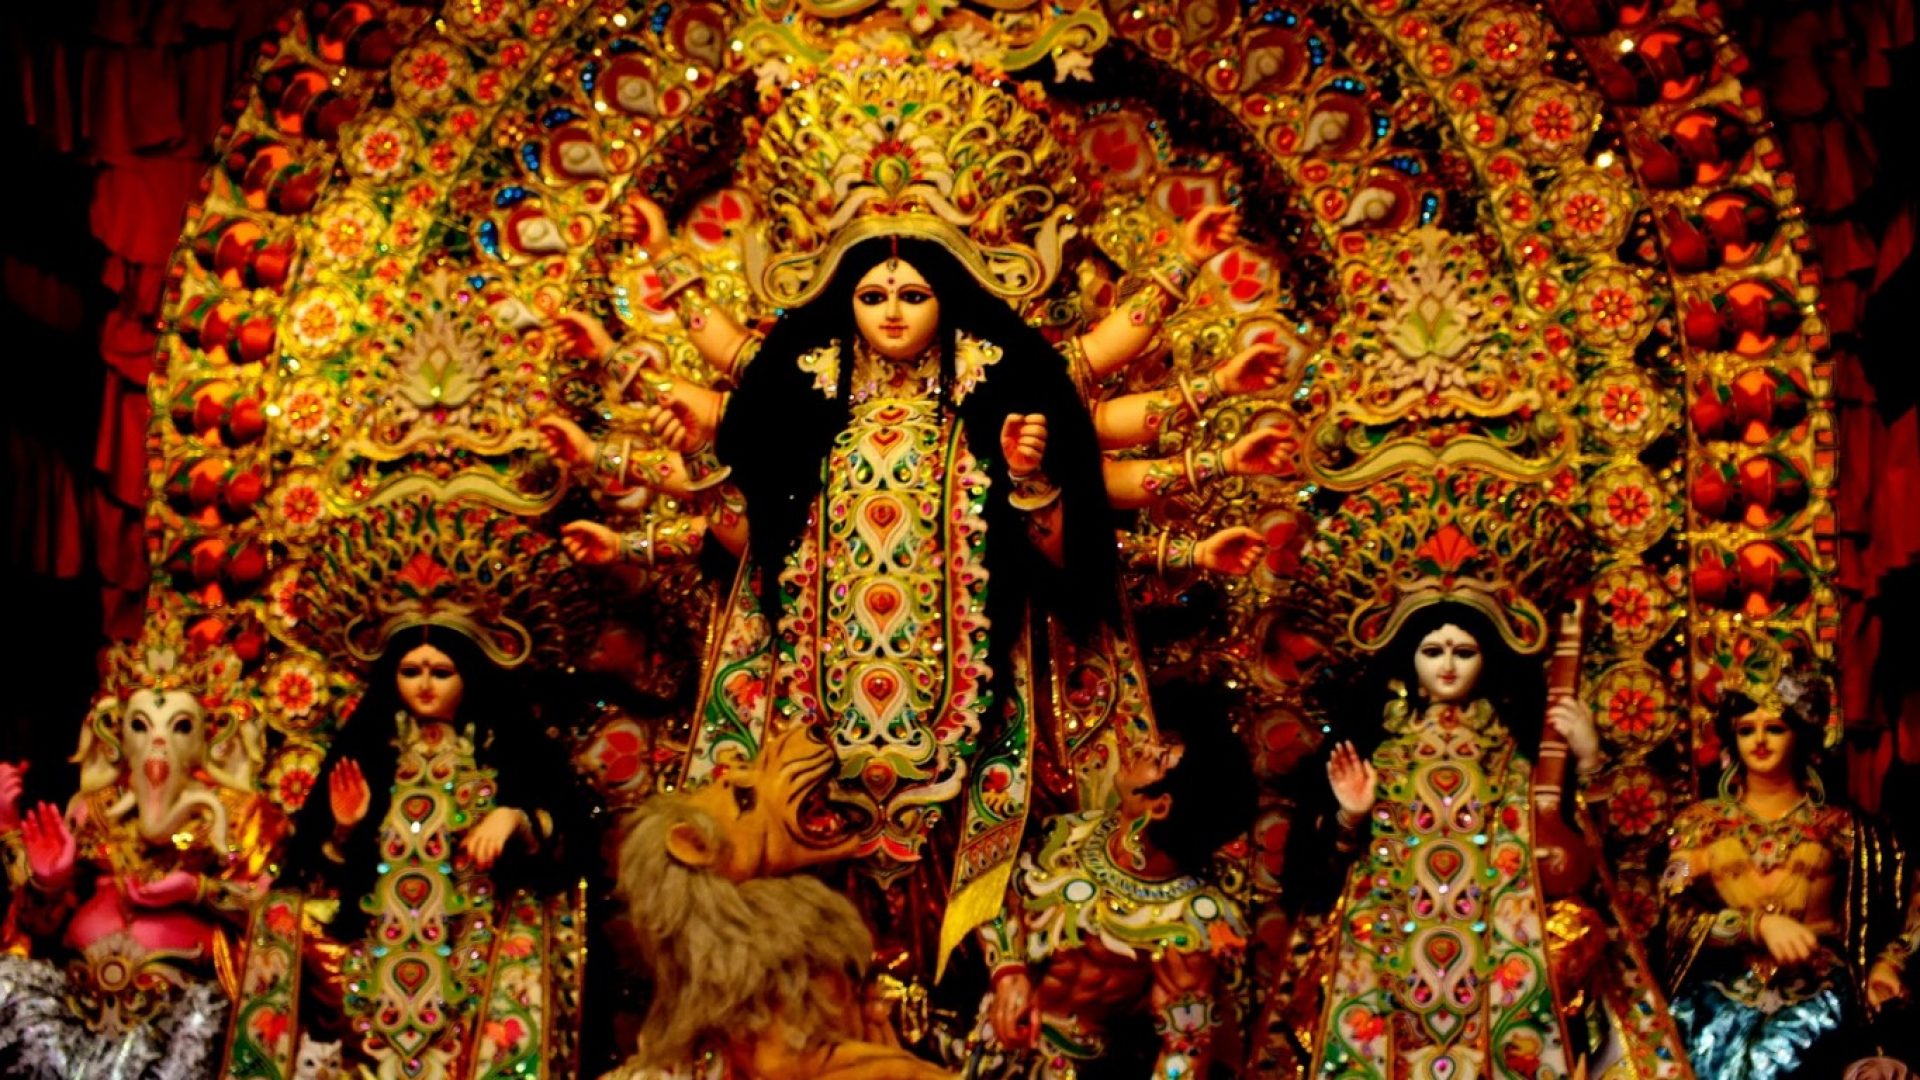 Jai Mata Di Image Facebook | Goddess Maa Durga